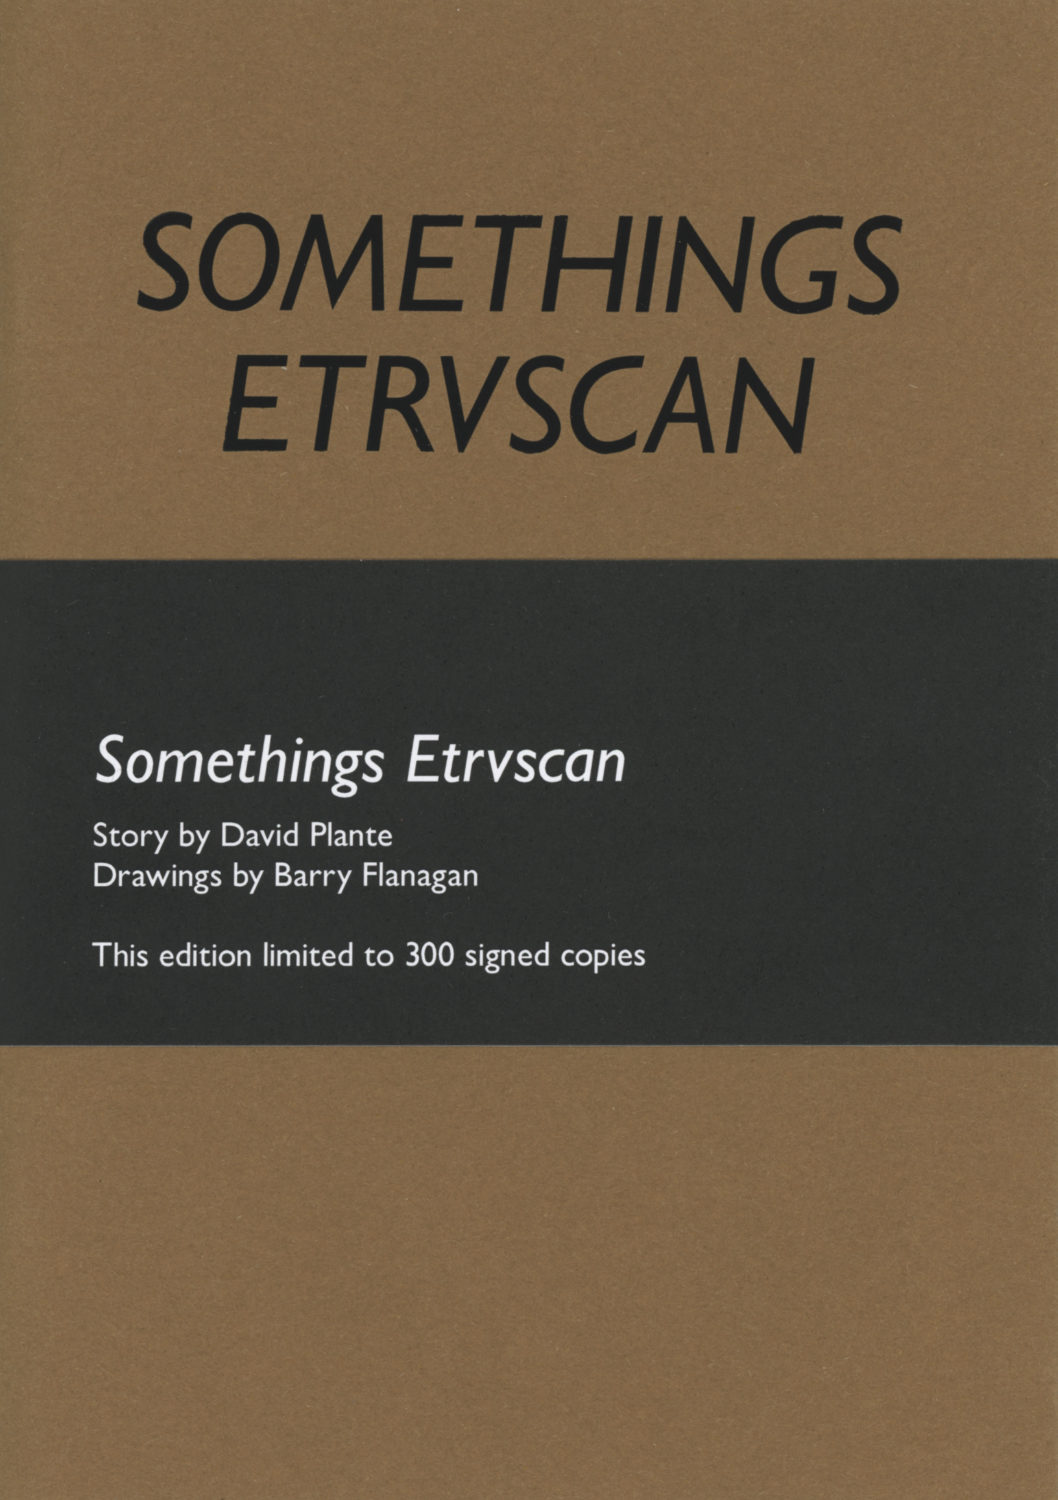 Somethings Etruscan